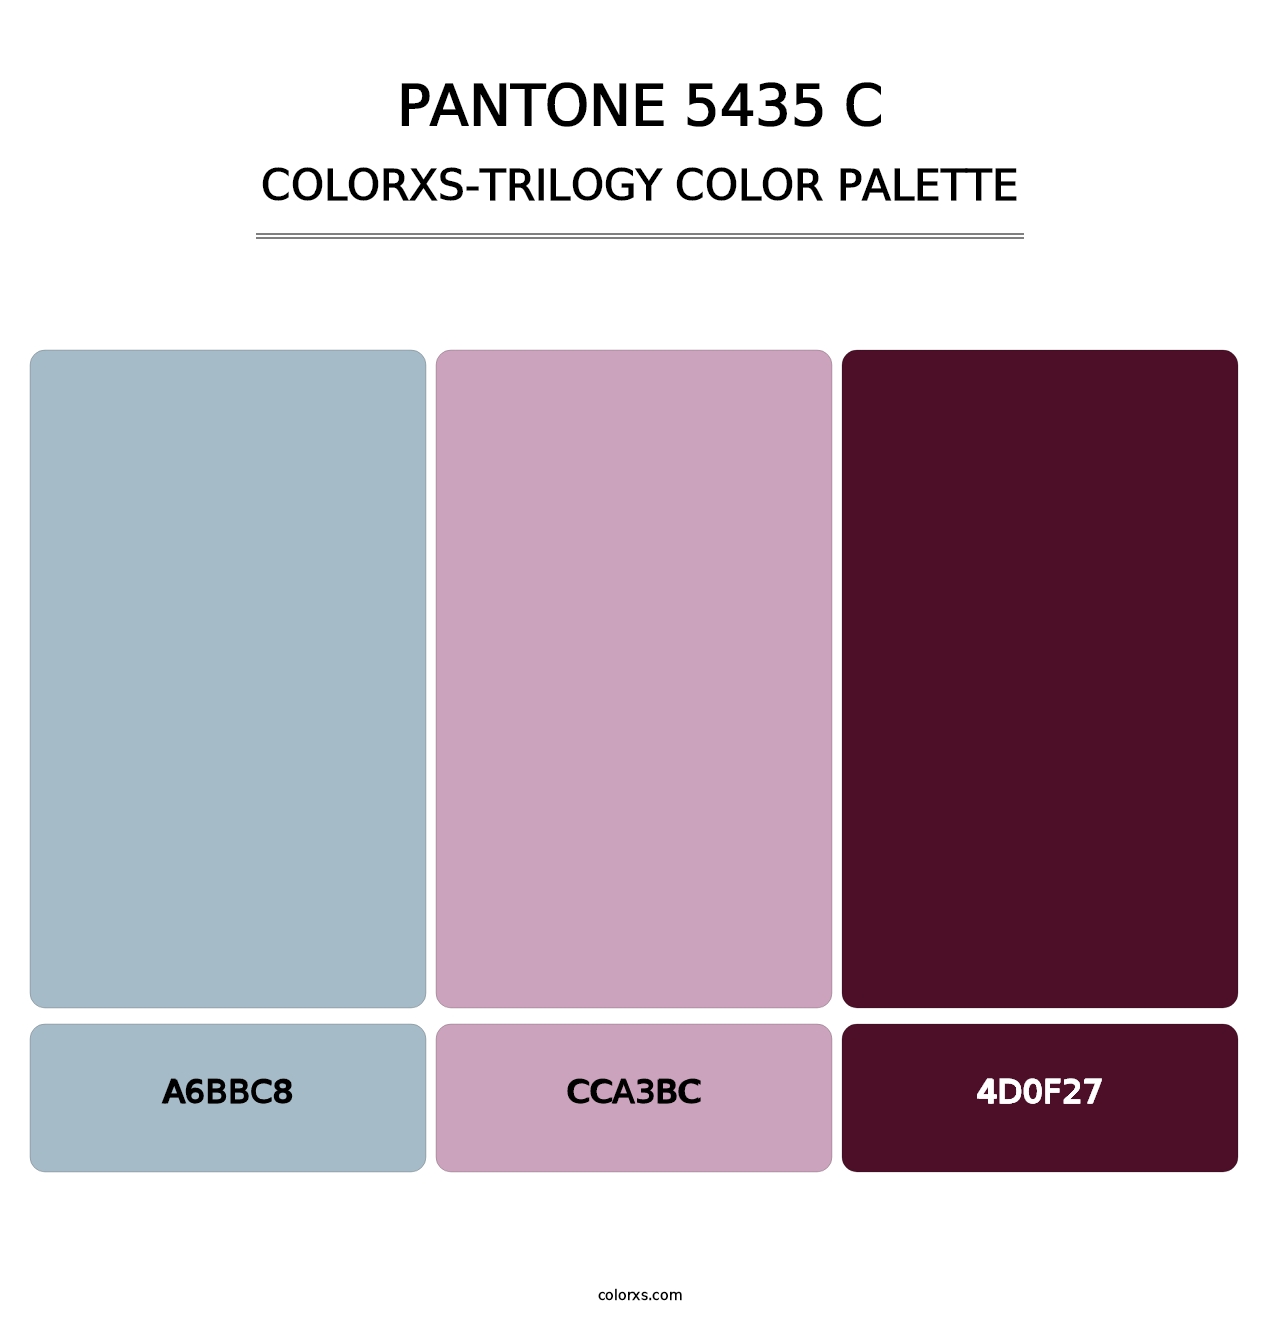 PANTONE 5435 C - Colorxs Trilogy Palette